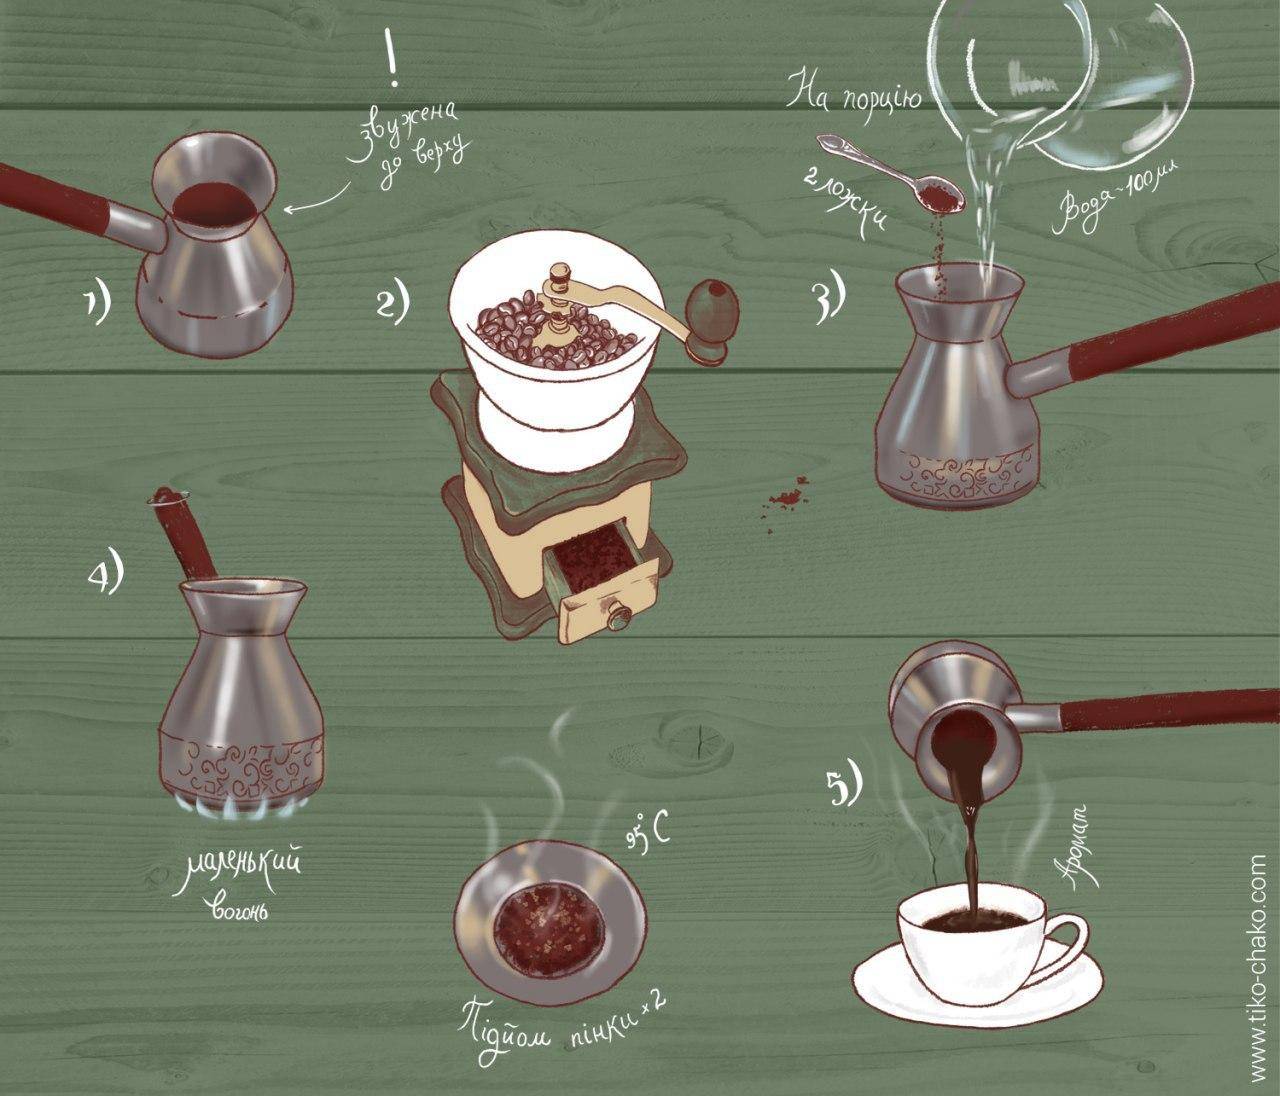 Лучшие капельные кофеварки: топ 10 разного ценового сегмента